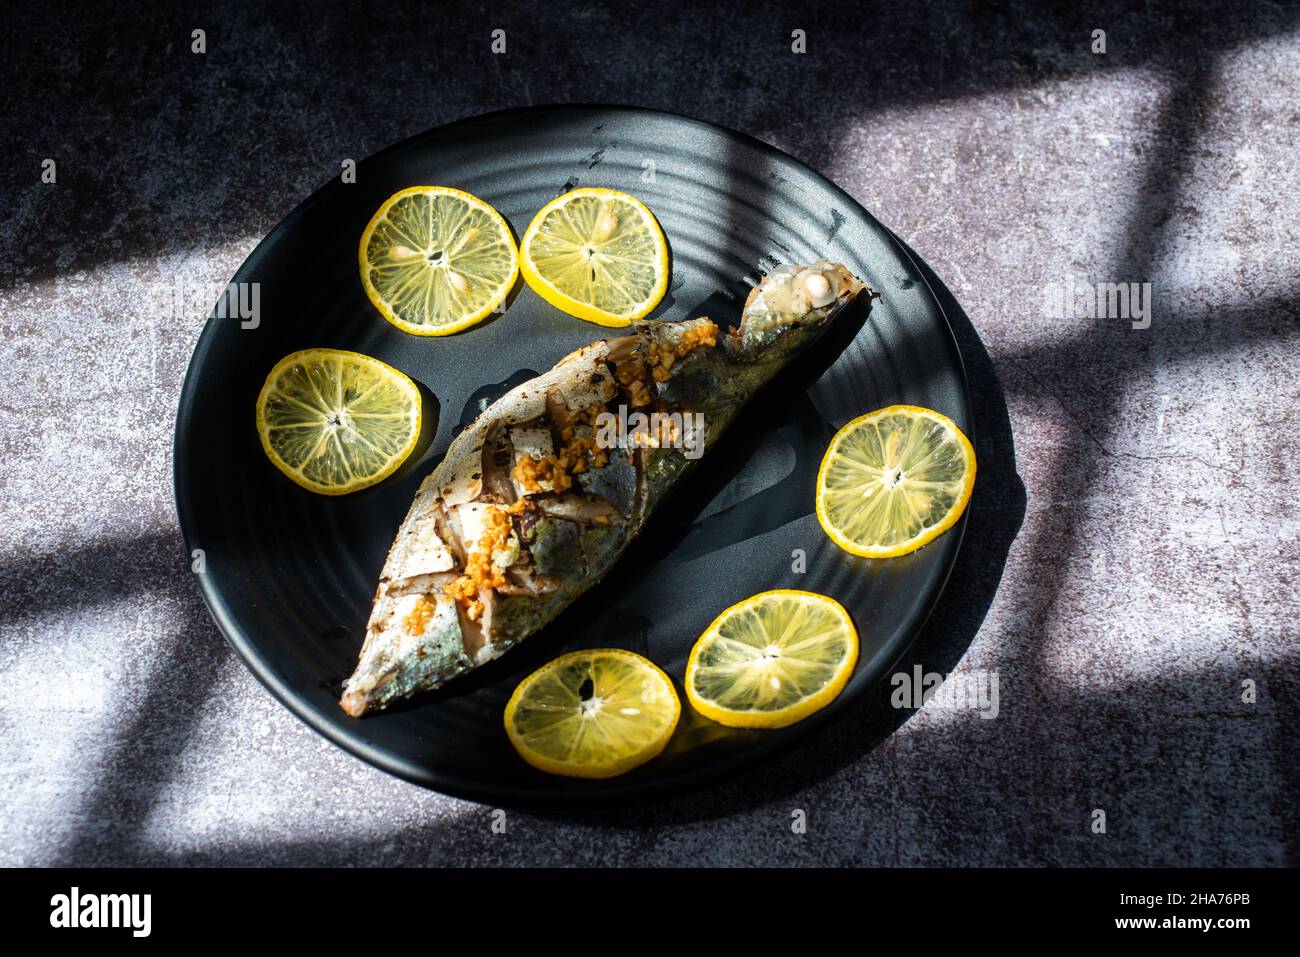 Rastrelliger kanagurta al vapore con aglio ingredienti principali includono pesce, aglio, pepe e pesce condito con zucchero, sale... Foto Stock